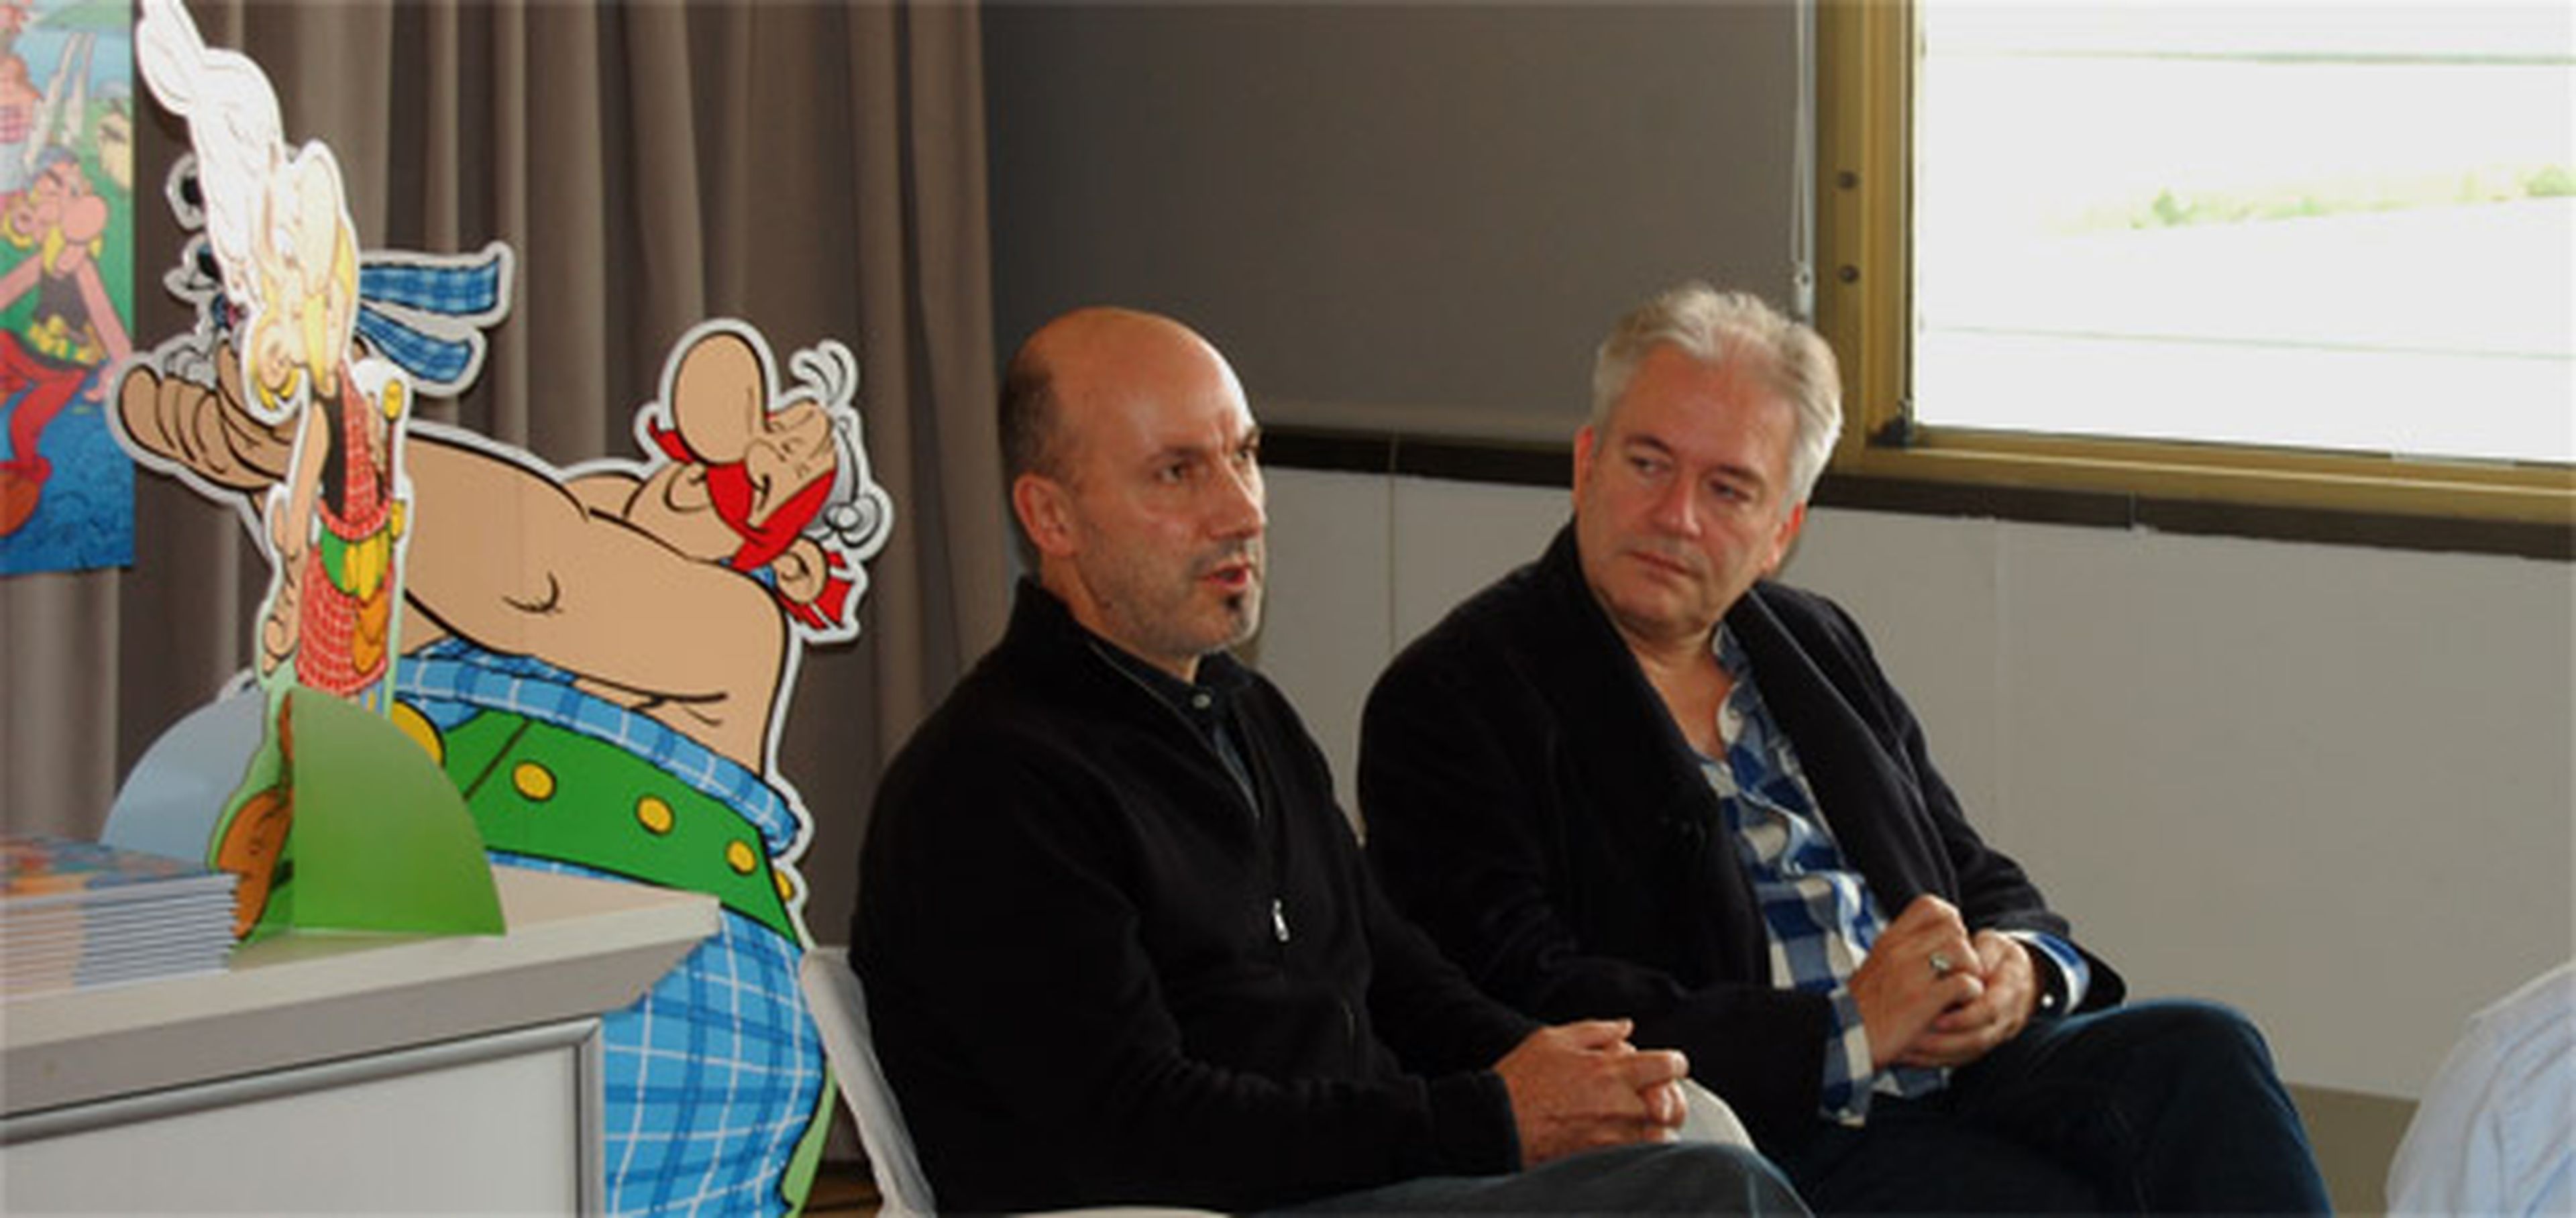 Presentación en Madrid de Asterix y los Pictos